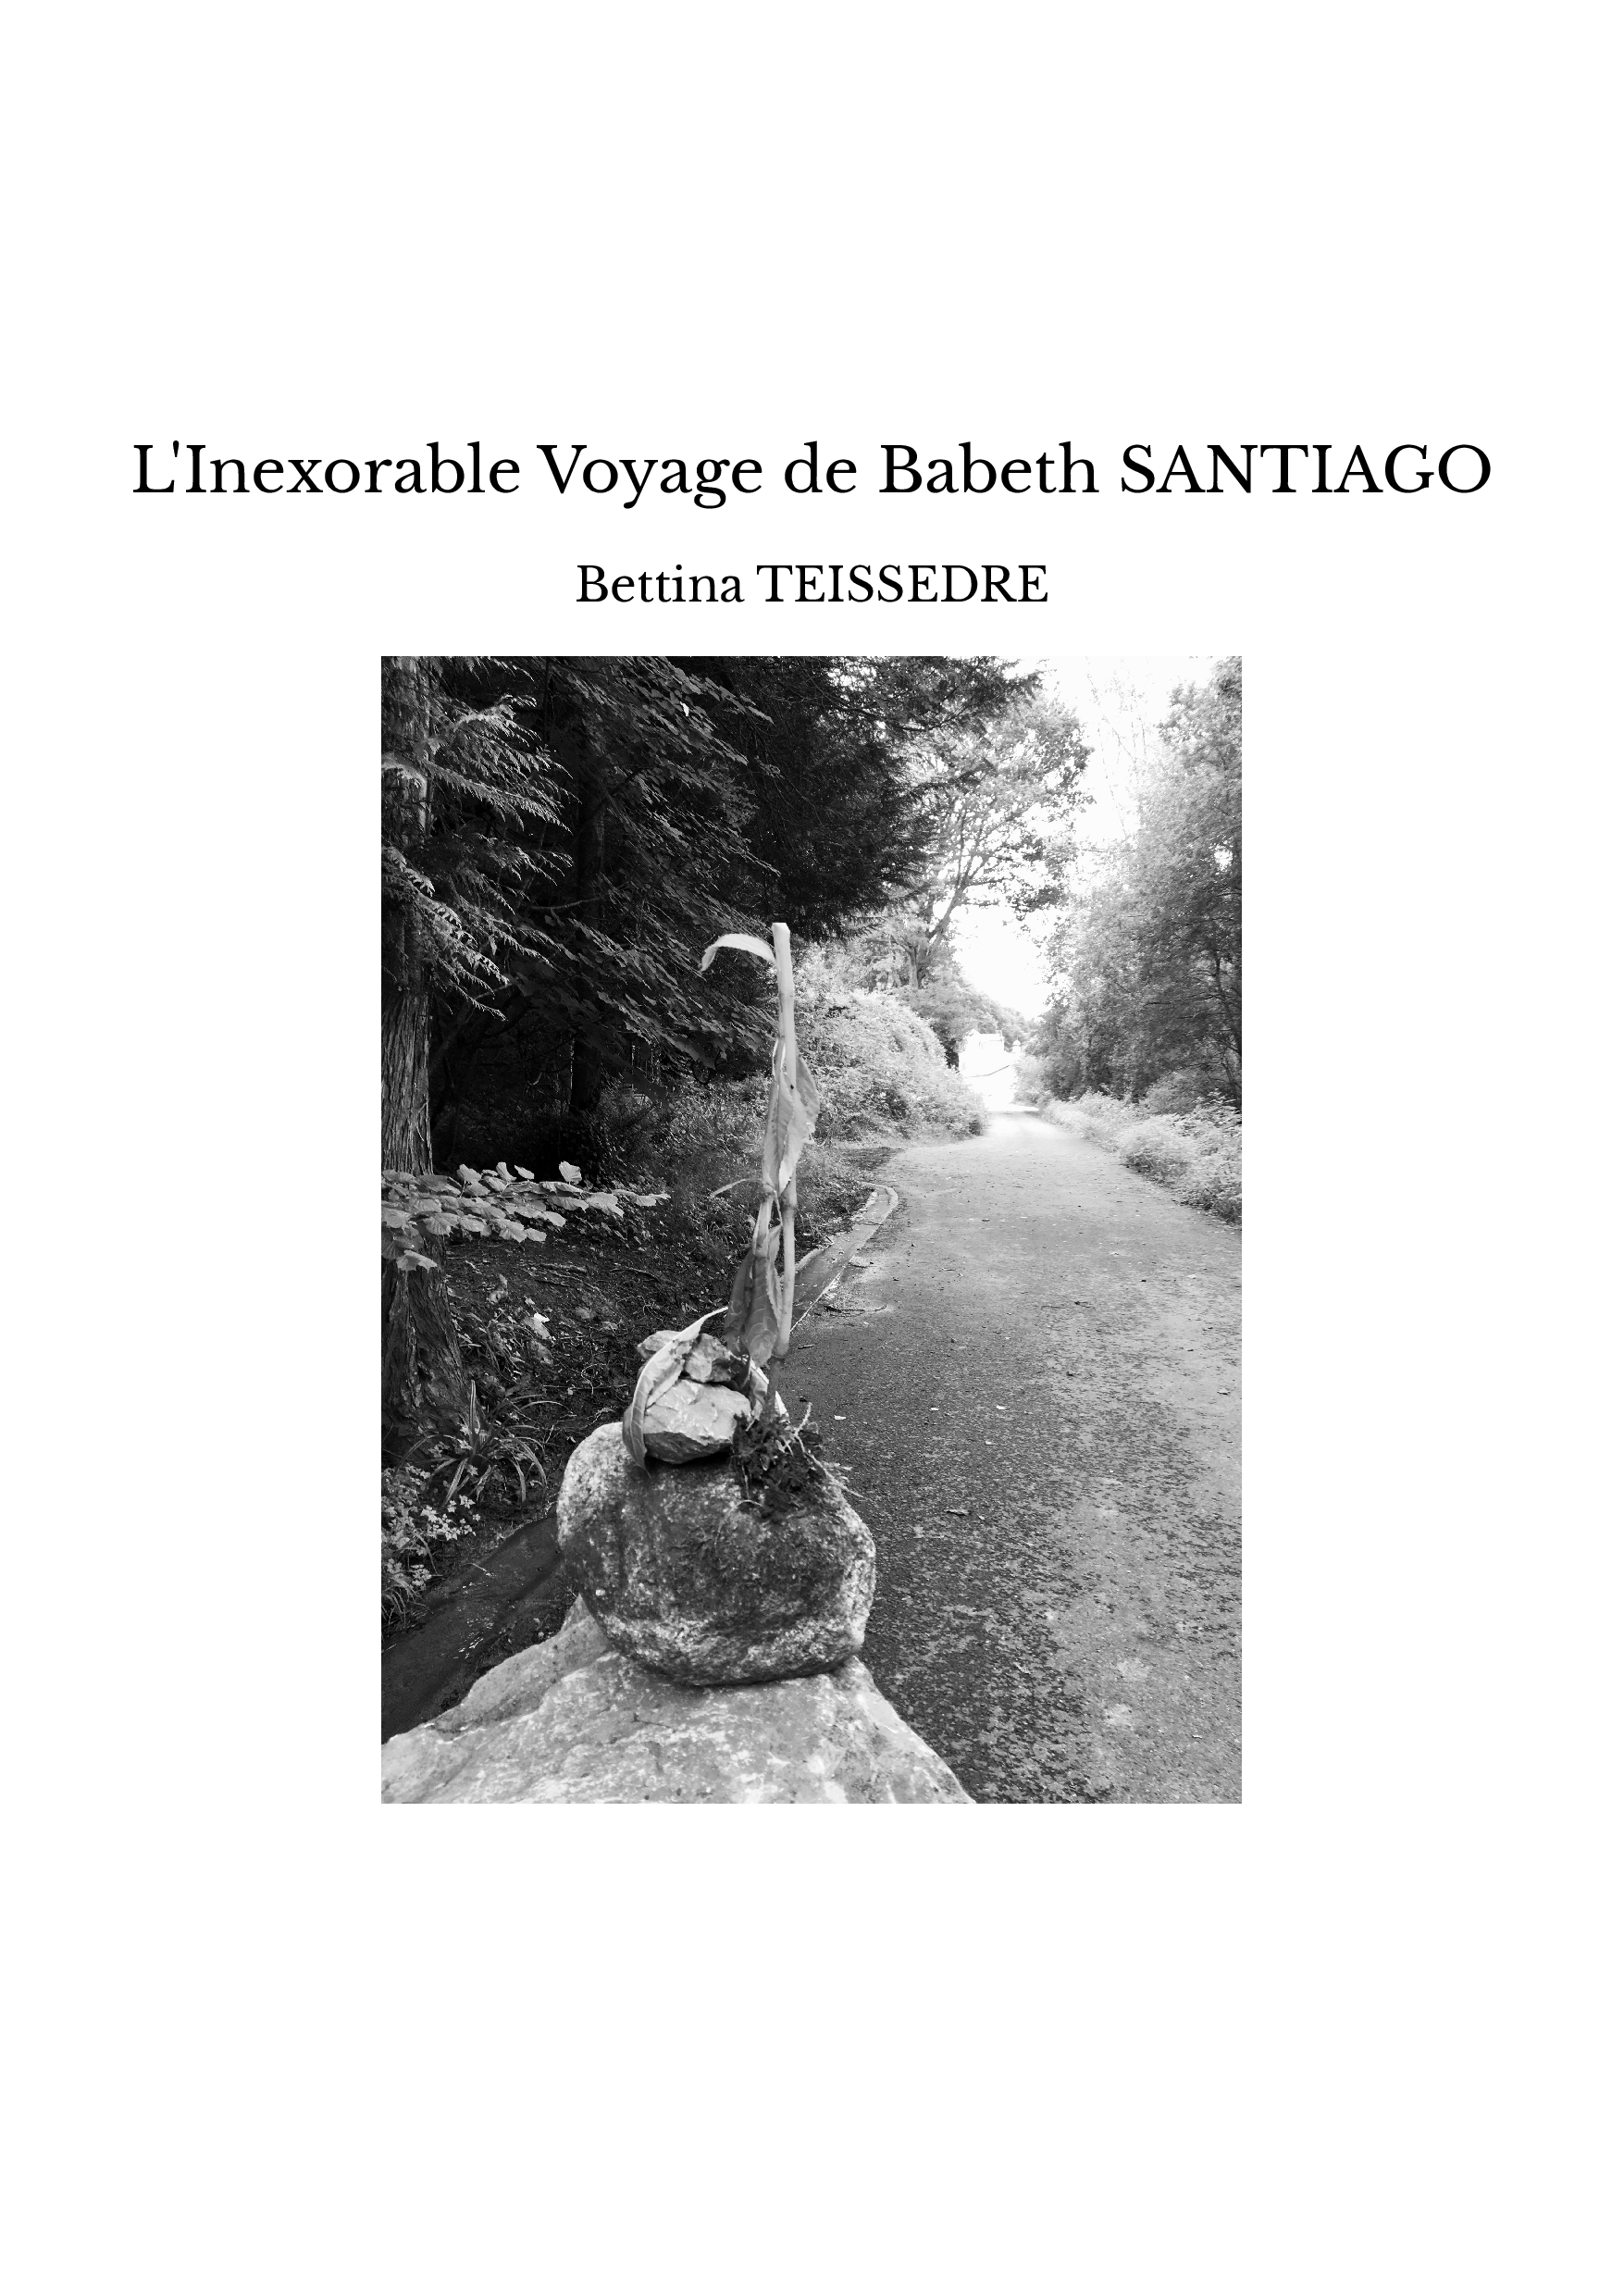 L'Inexorable Voyage de Babeth SANTIAGO